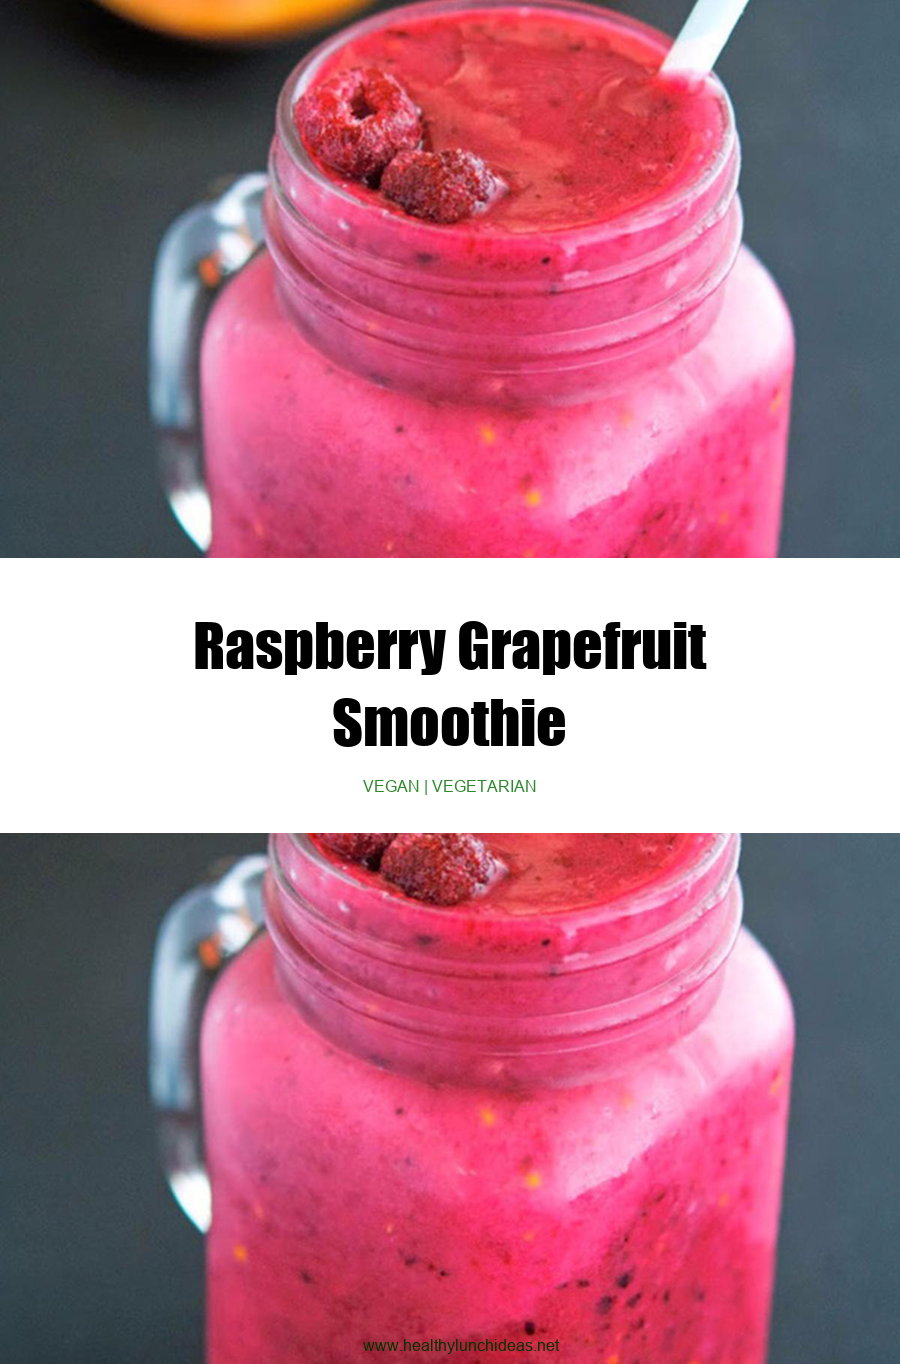 Healthy Recipes: Raspberry Grapefruit Smoothie Recipe